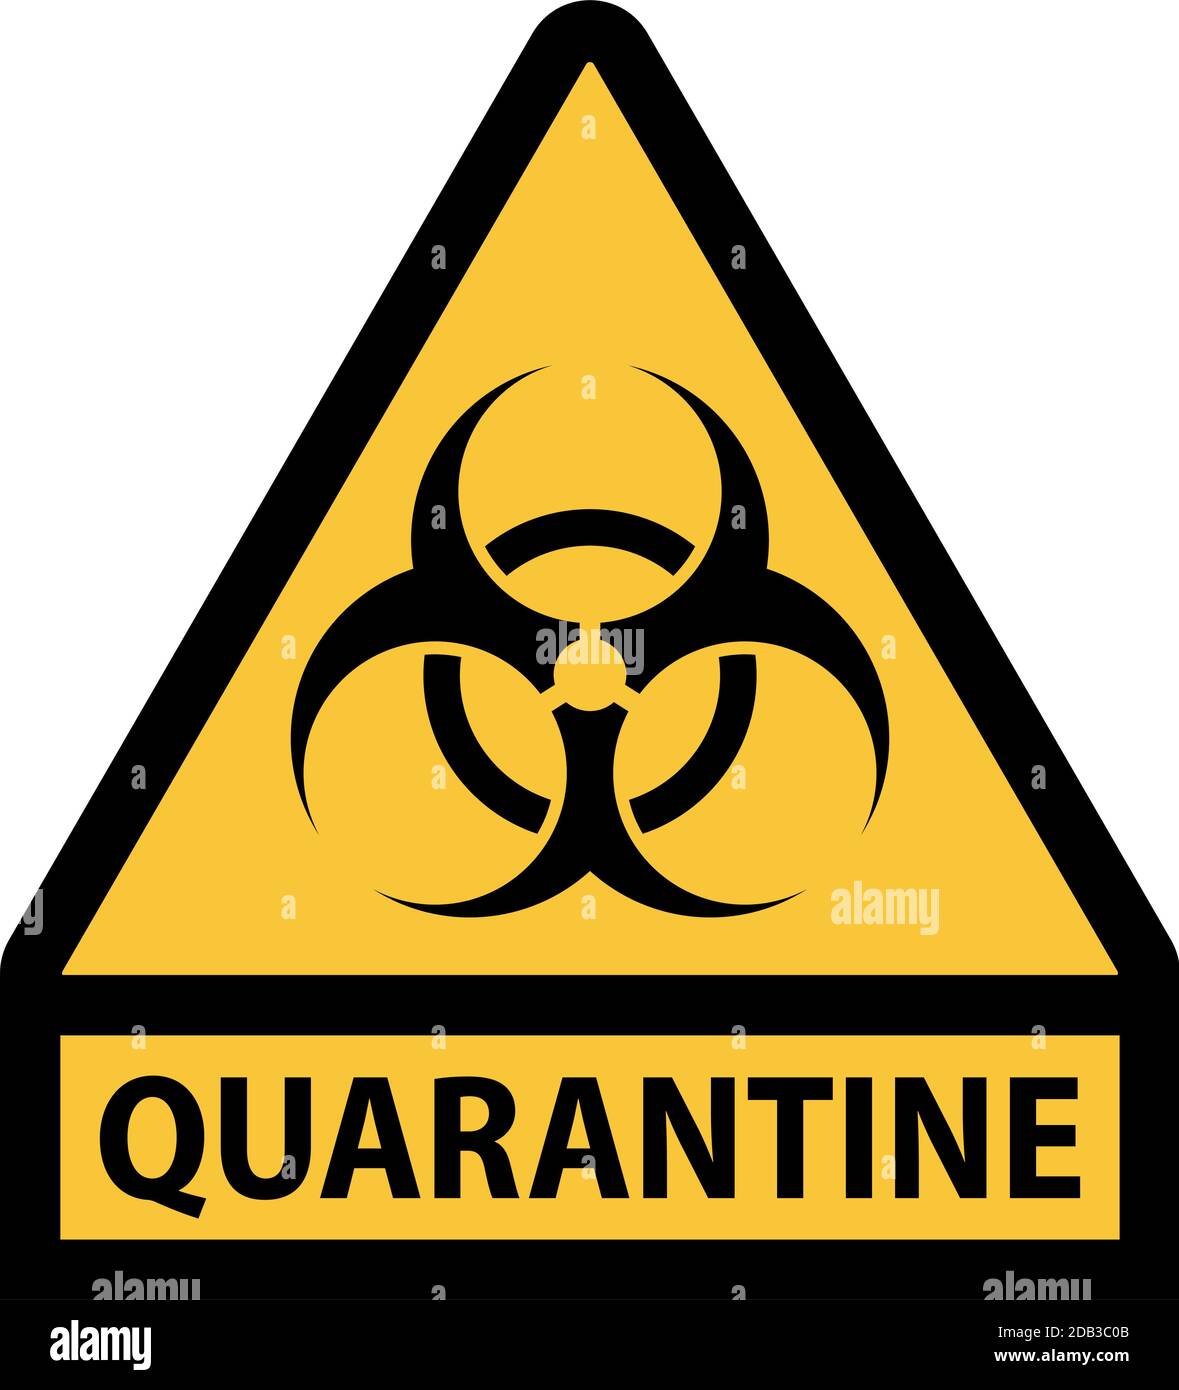 Quarantäne Biohazard Warnschild mit dreieckiger Form gelbe Farbe und Schwarzer Rahmen Stock Vektor